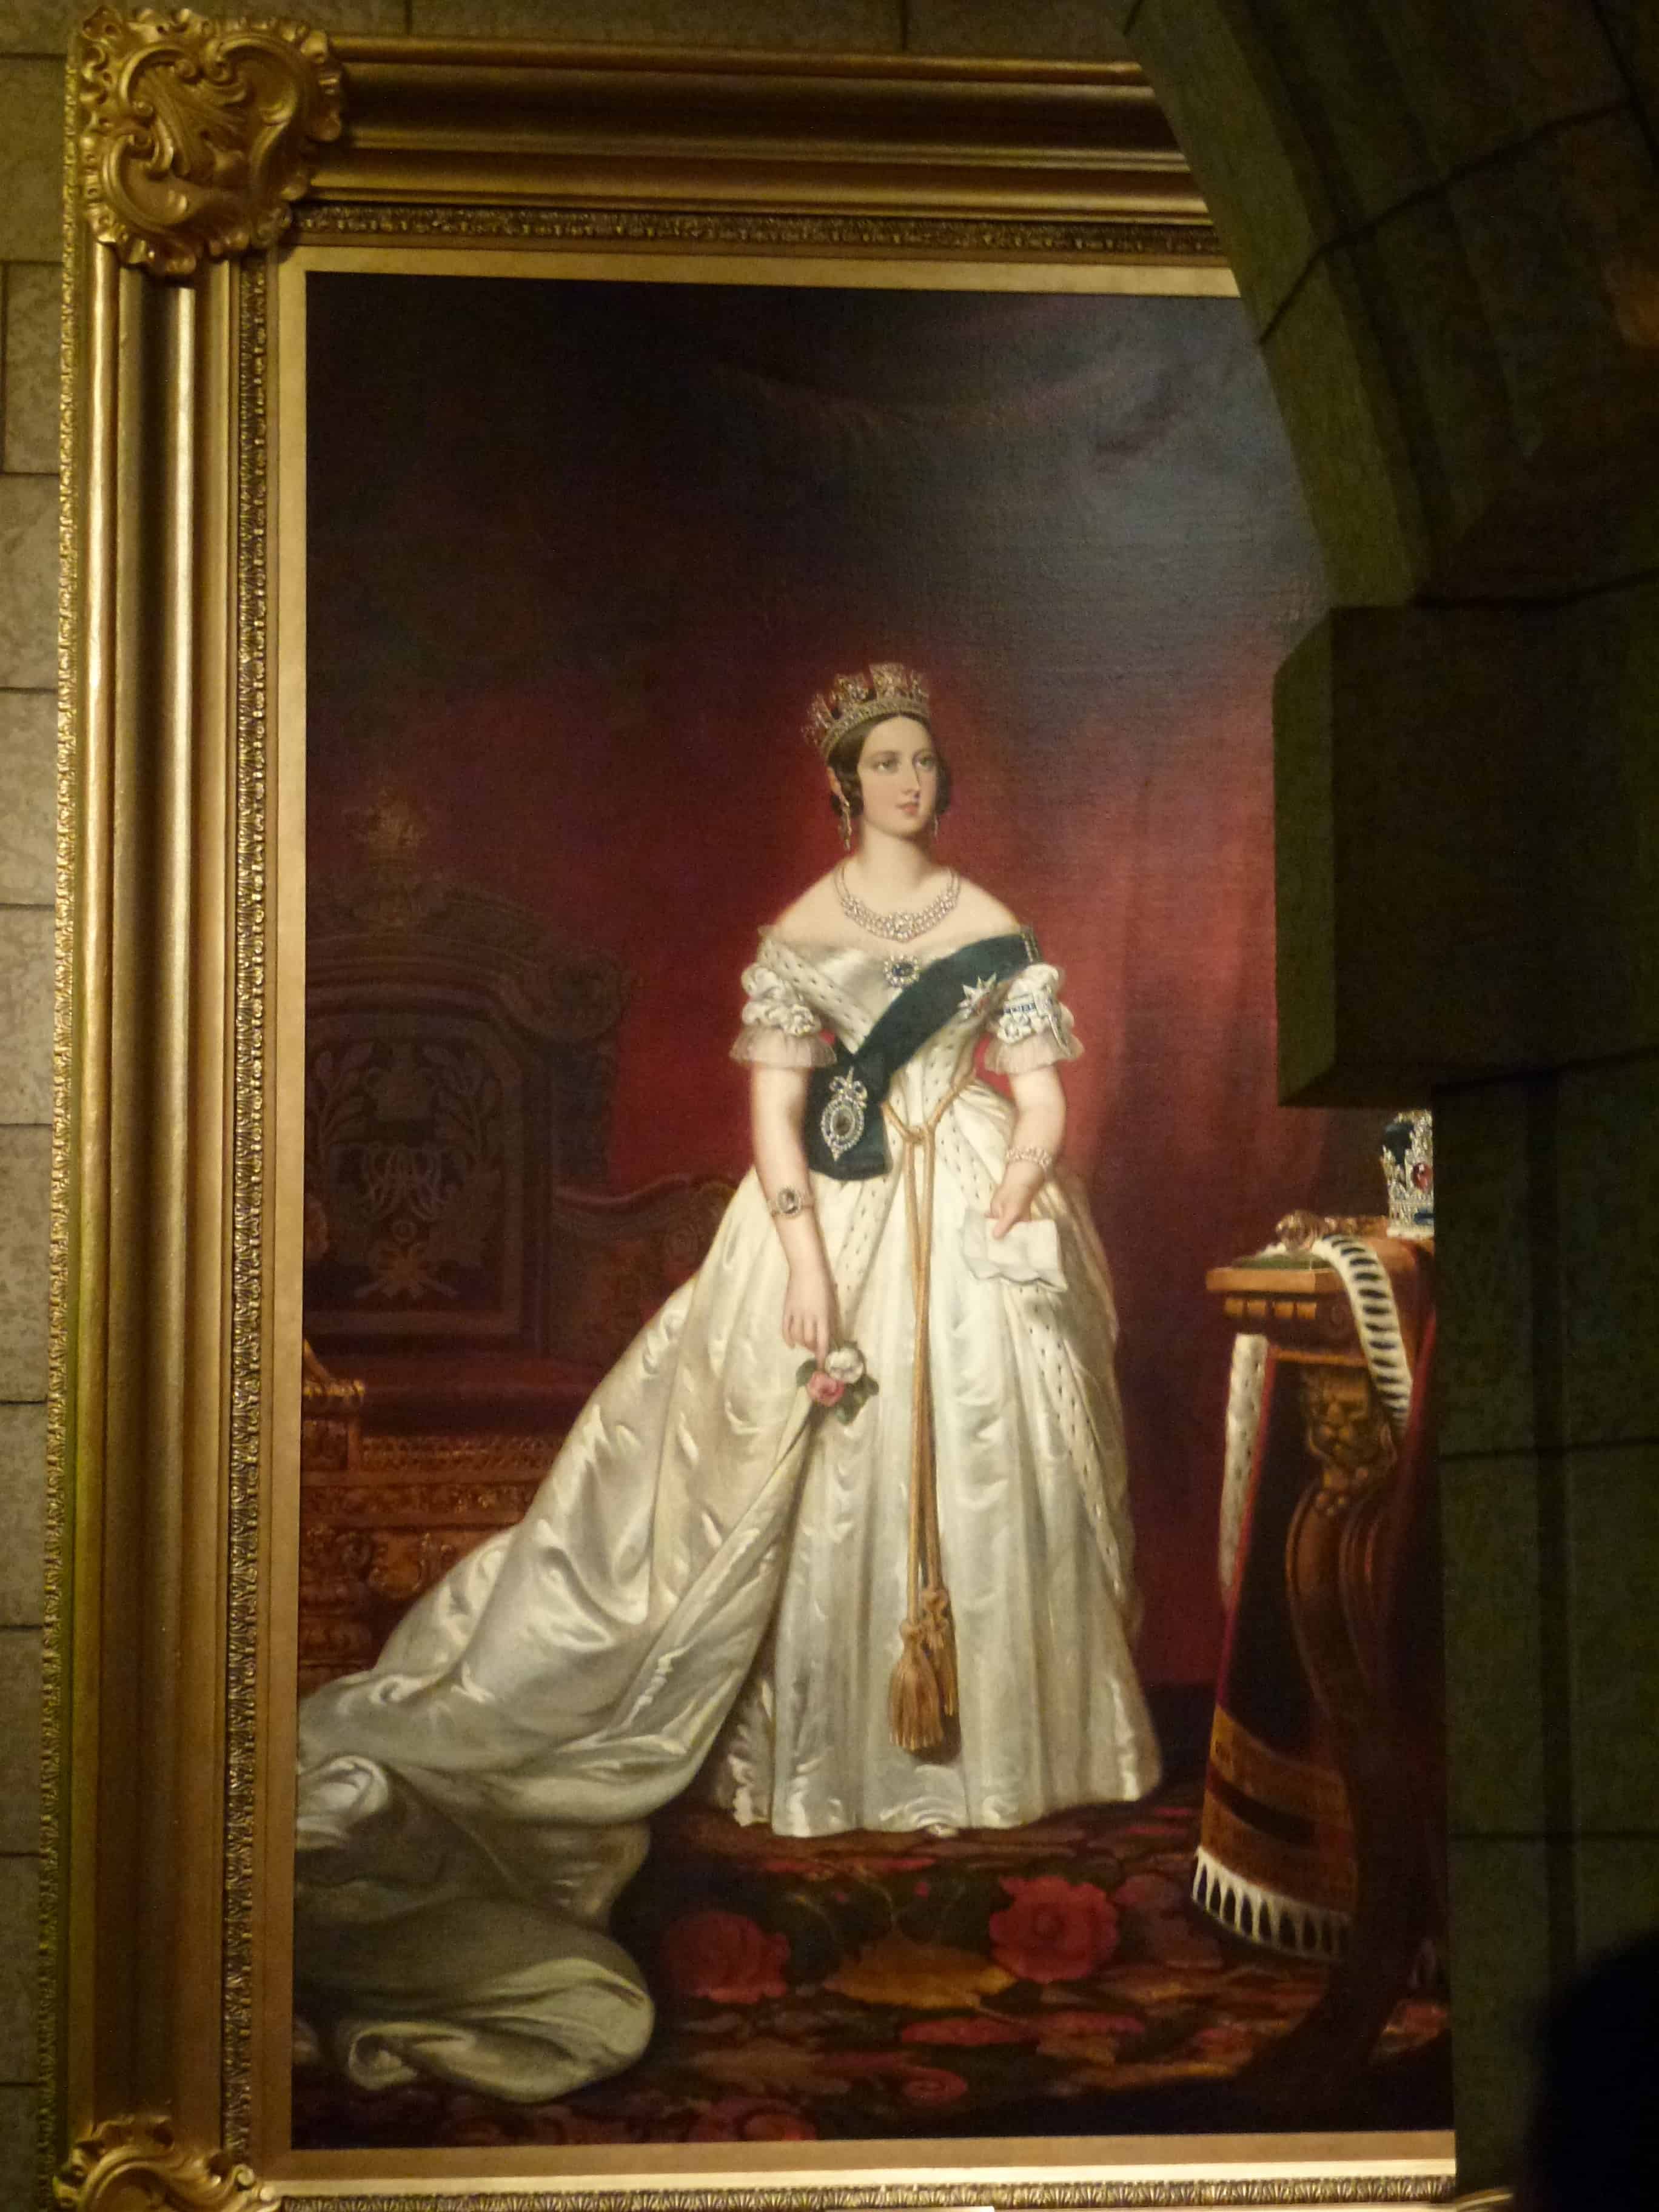 Portrait of Queen Victoria in the Senate foyer at Parliament Centre Block in Ottawa, Ontario Canada